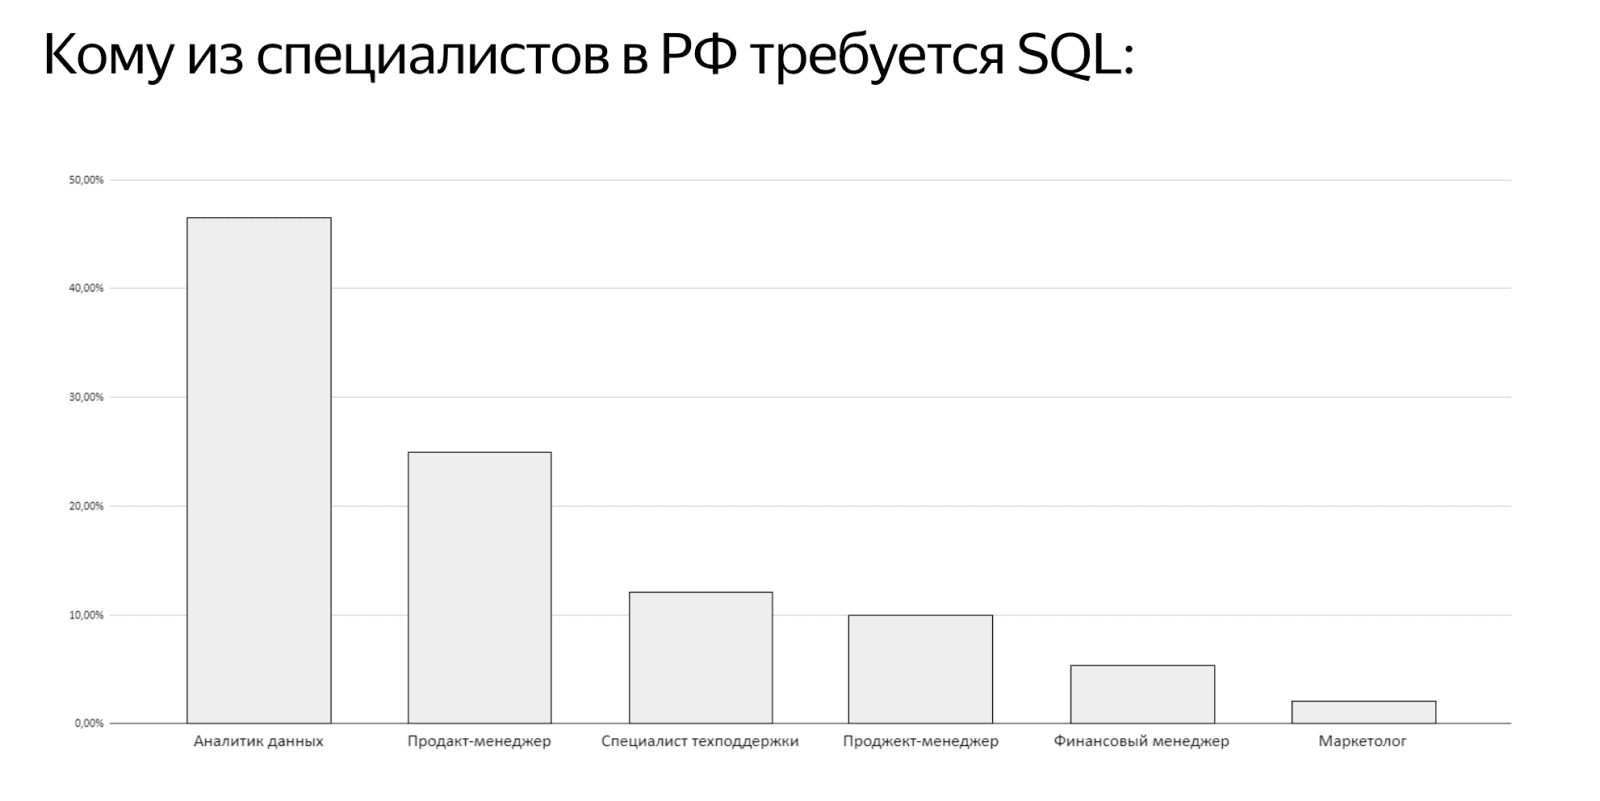 Изображение [Яндекс Практикум] SQL для работы с данными и аналитики 2 часть (2022) в посте 263641